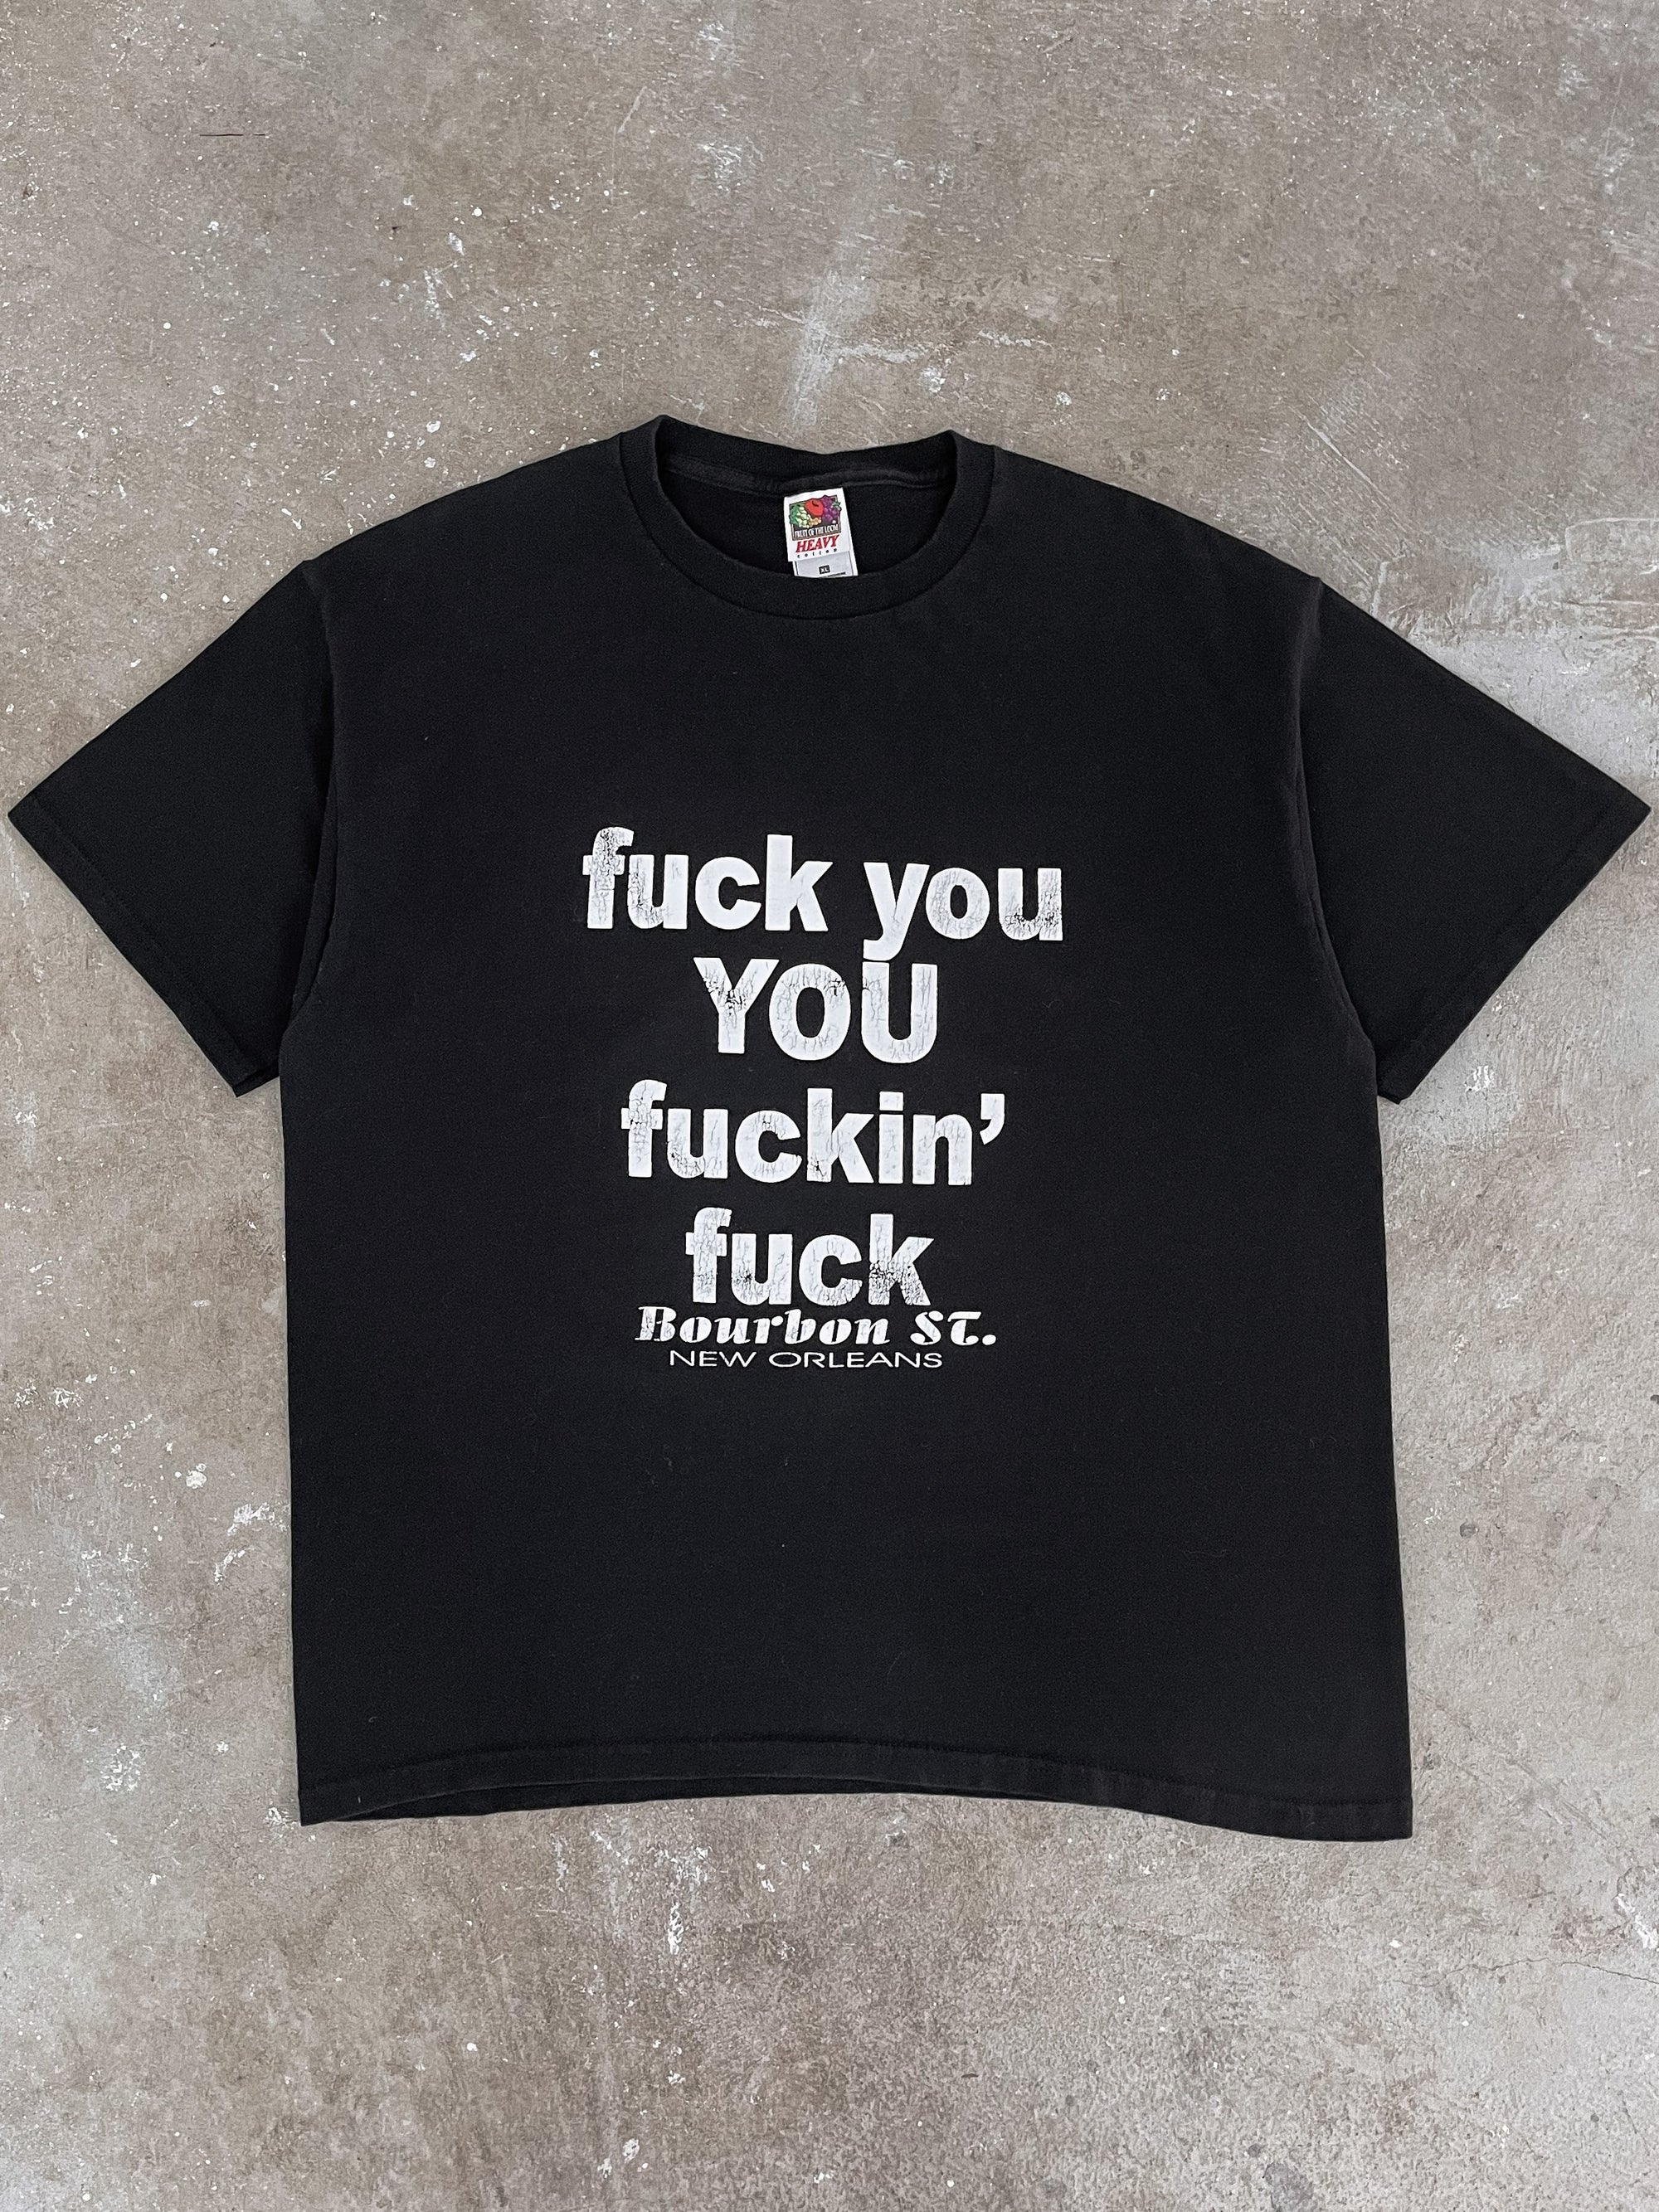 1990s/00s “Fuck You You Fuckin’ Fuck” Tee (XL)